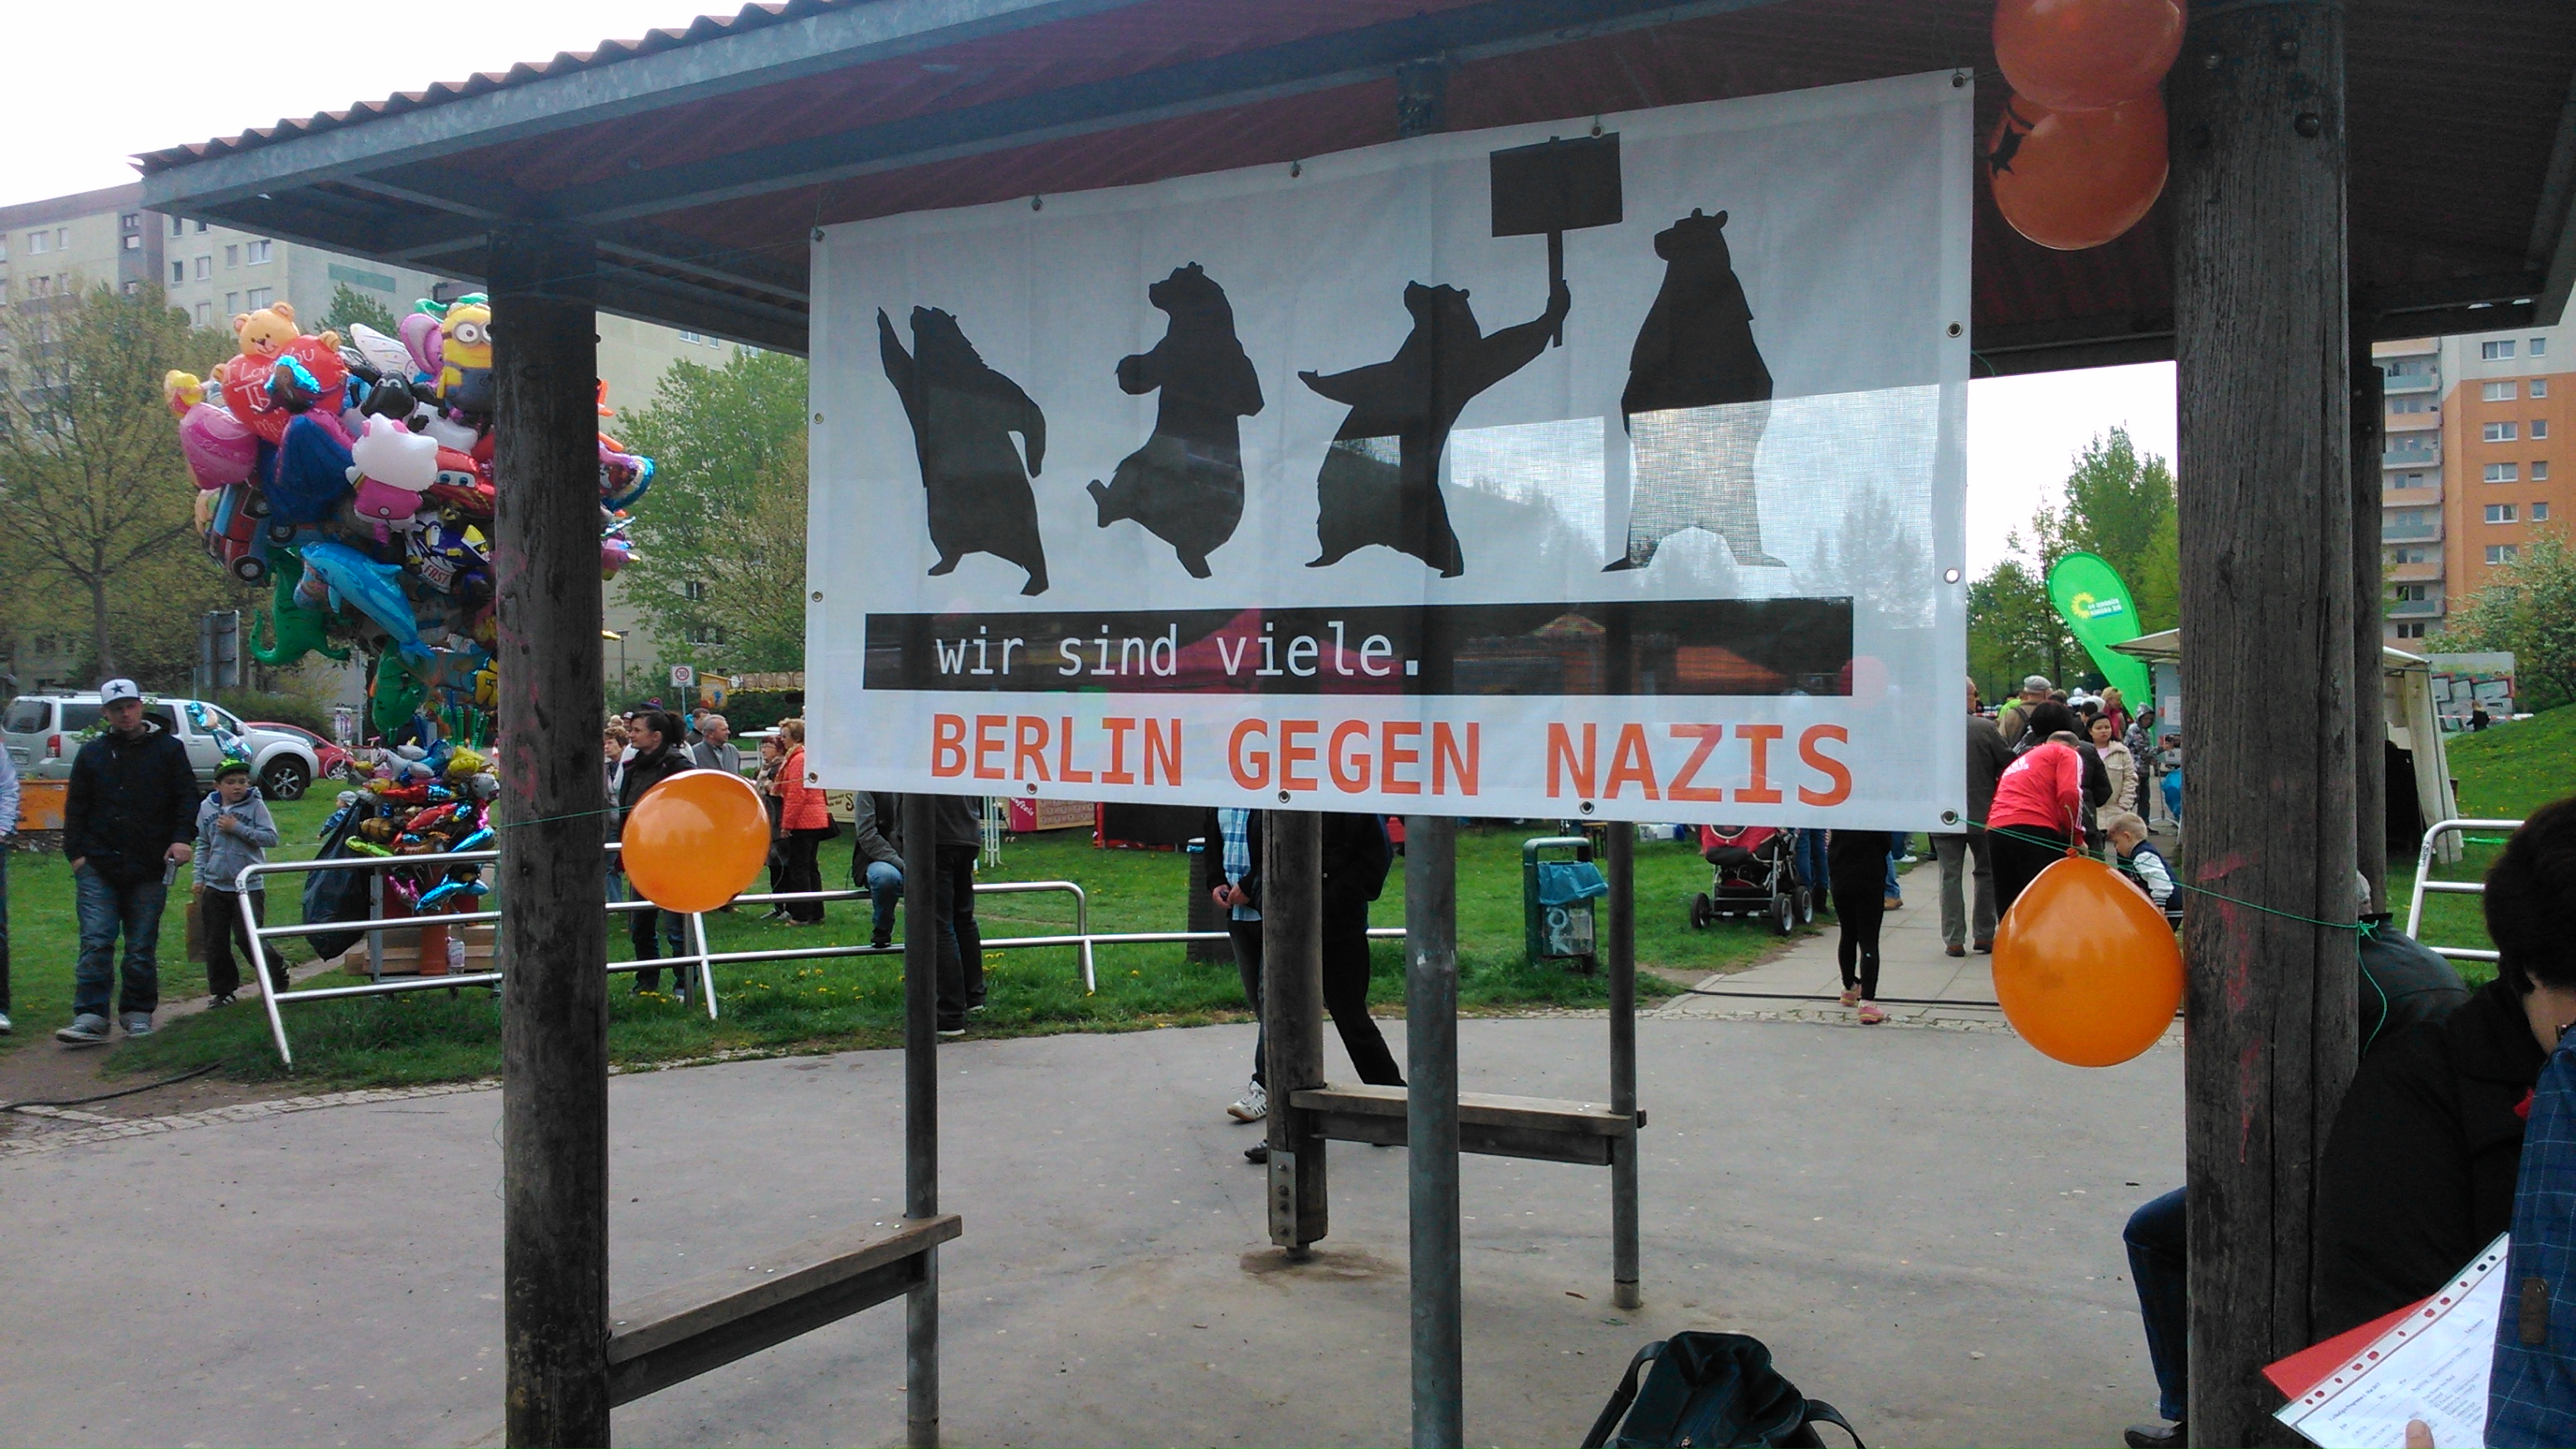 Mit dem Fest "Bunte Platte" wolle man ein "ein Zeichen setzen für eine weltoffene Gesellschaft und ein friedliches, demokratisches Miteinander", so das Lichtenberger Bündnis. Dazu gab es auf zahlreichen Ständen passendes Informationsmaterial - u.a. von Berlin gegen Nazis.